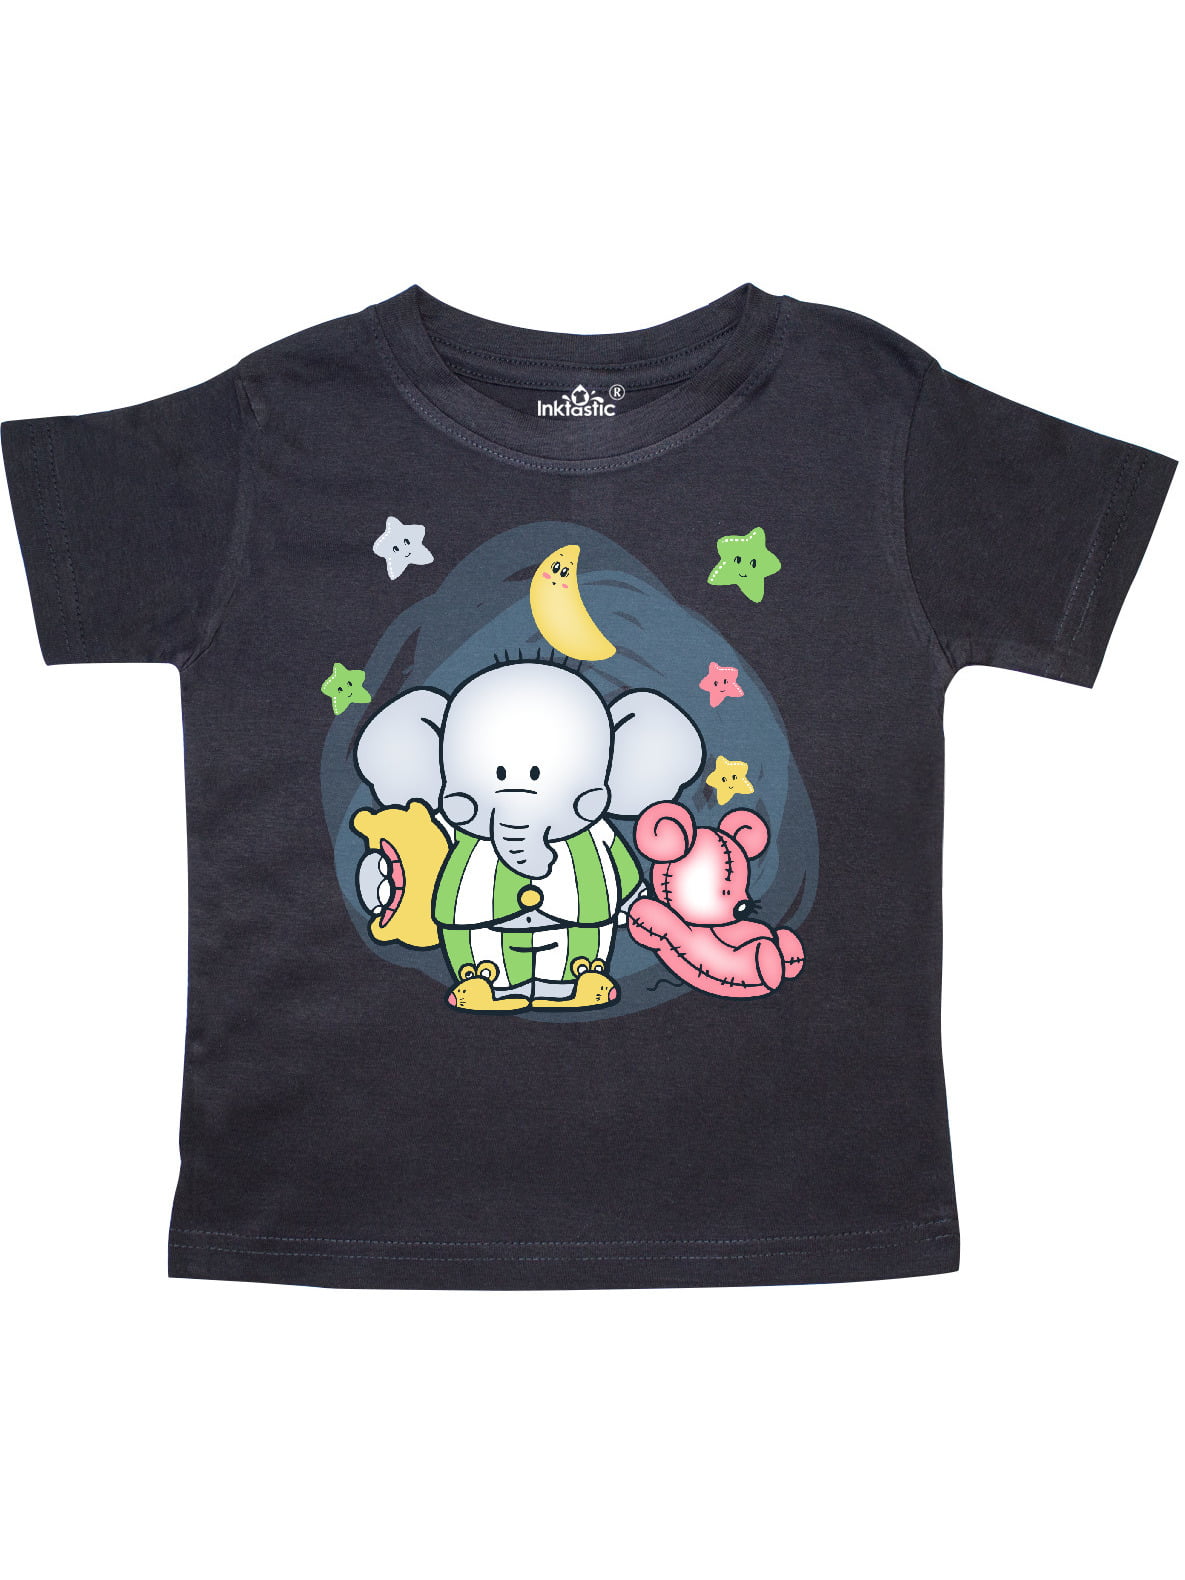 Elephant Pajamas Toddler T-Shirt - Walmart.com - Walmart.com